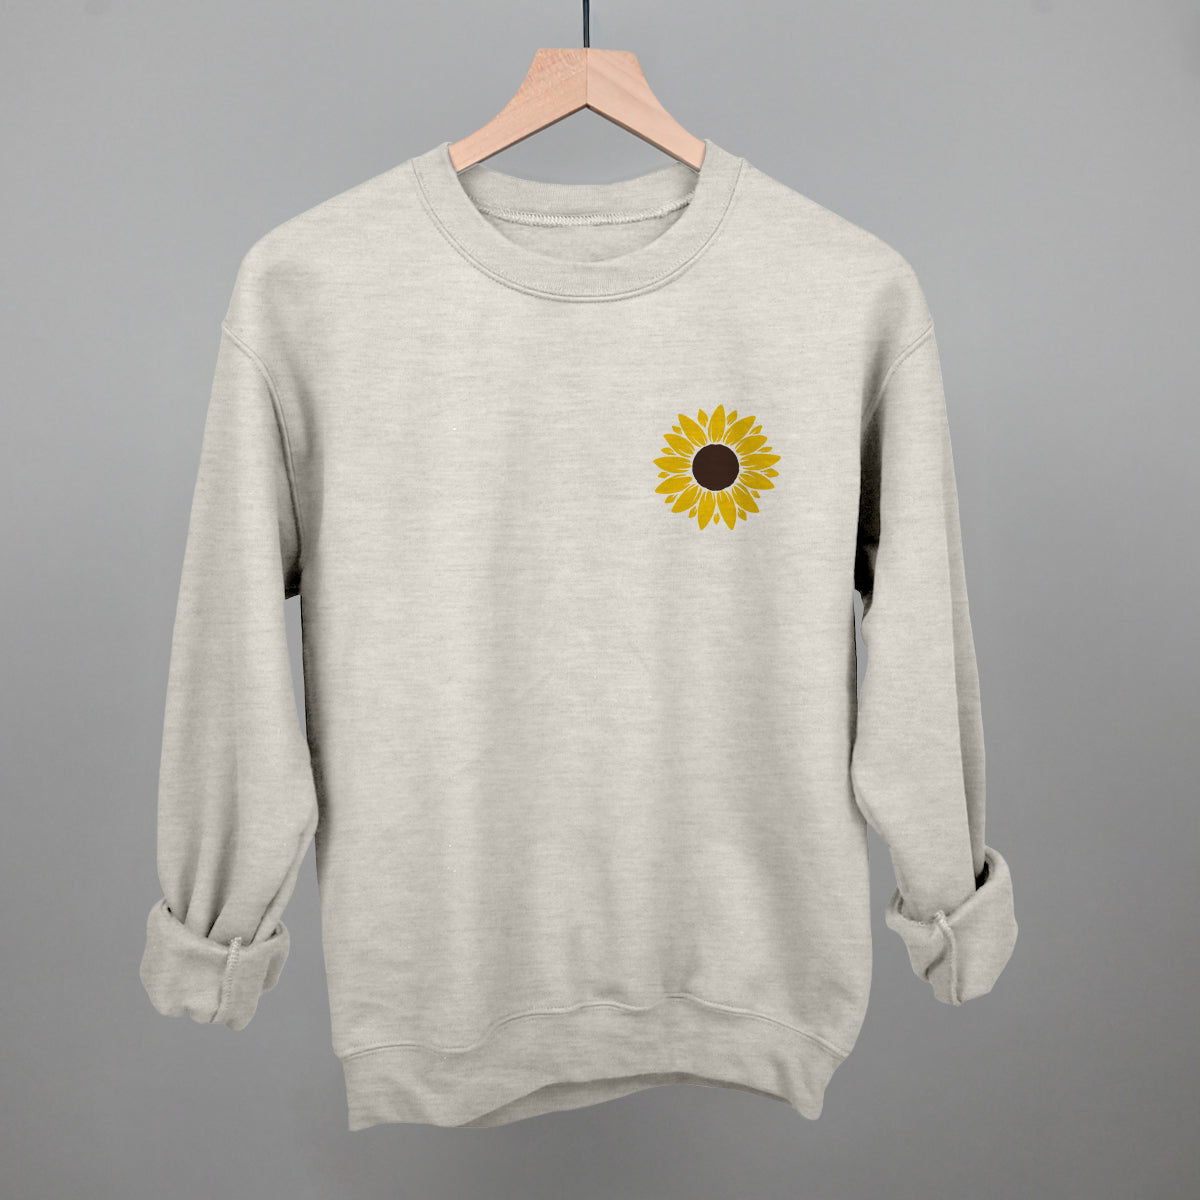 Sunflower (Left Chest)